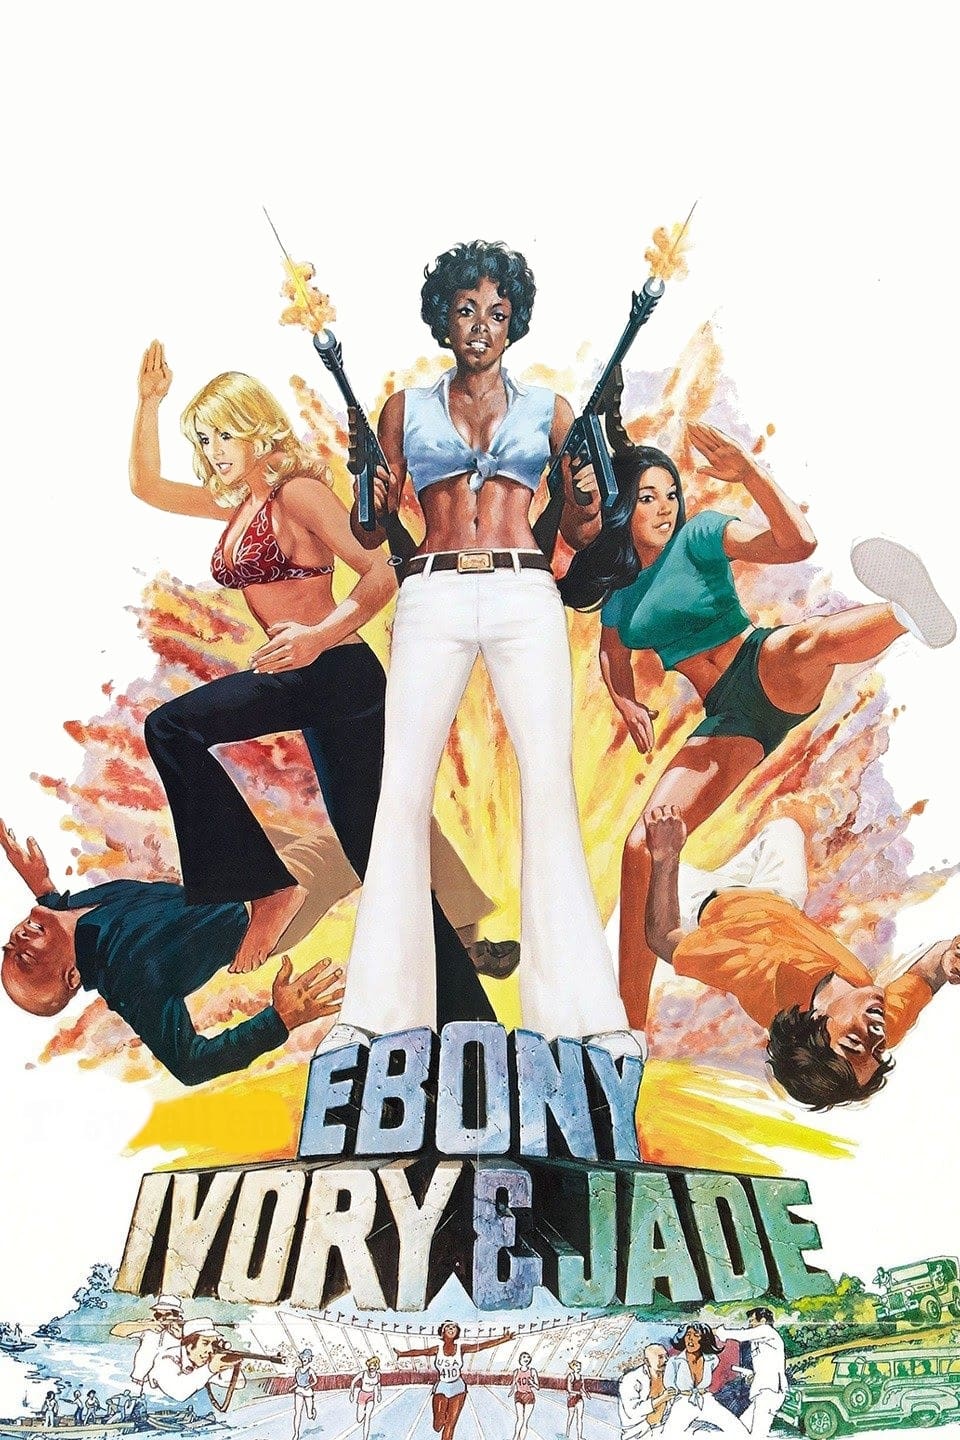 Ebony, Ivory & Jade (1976)